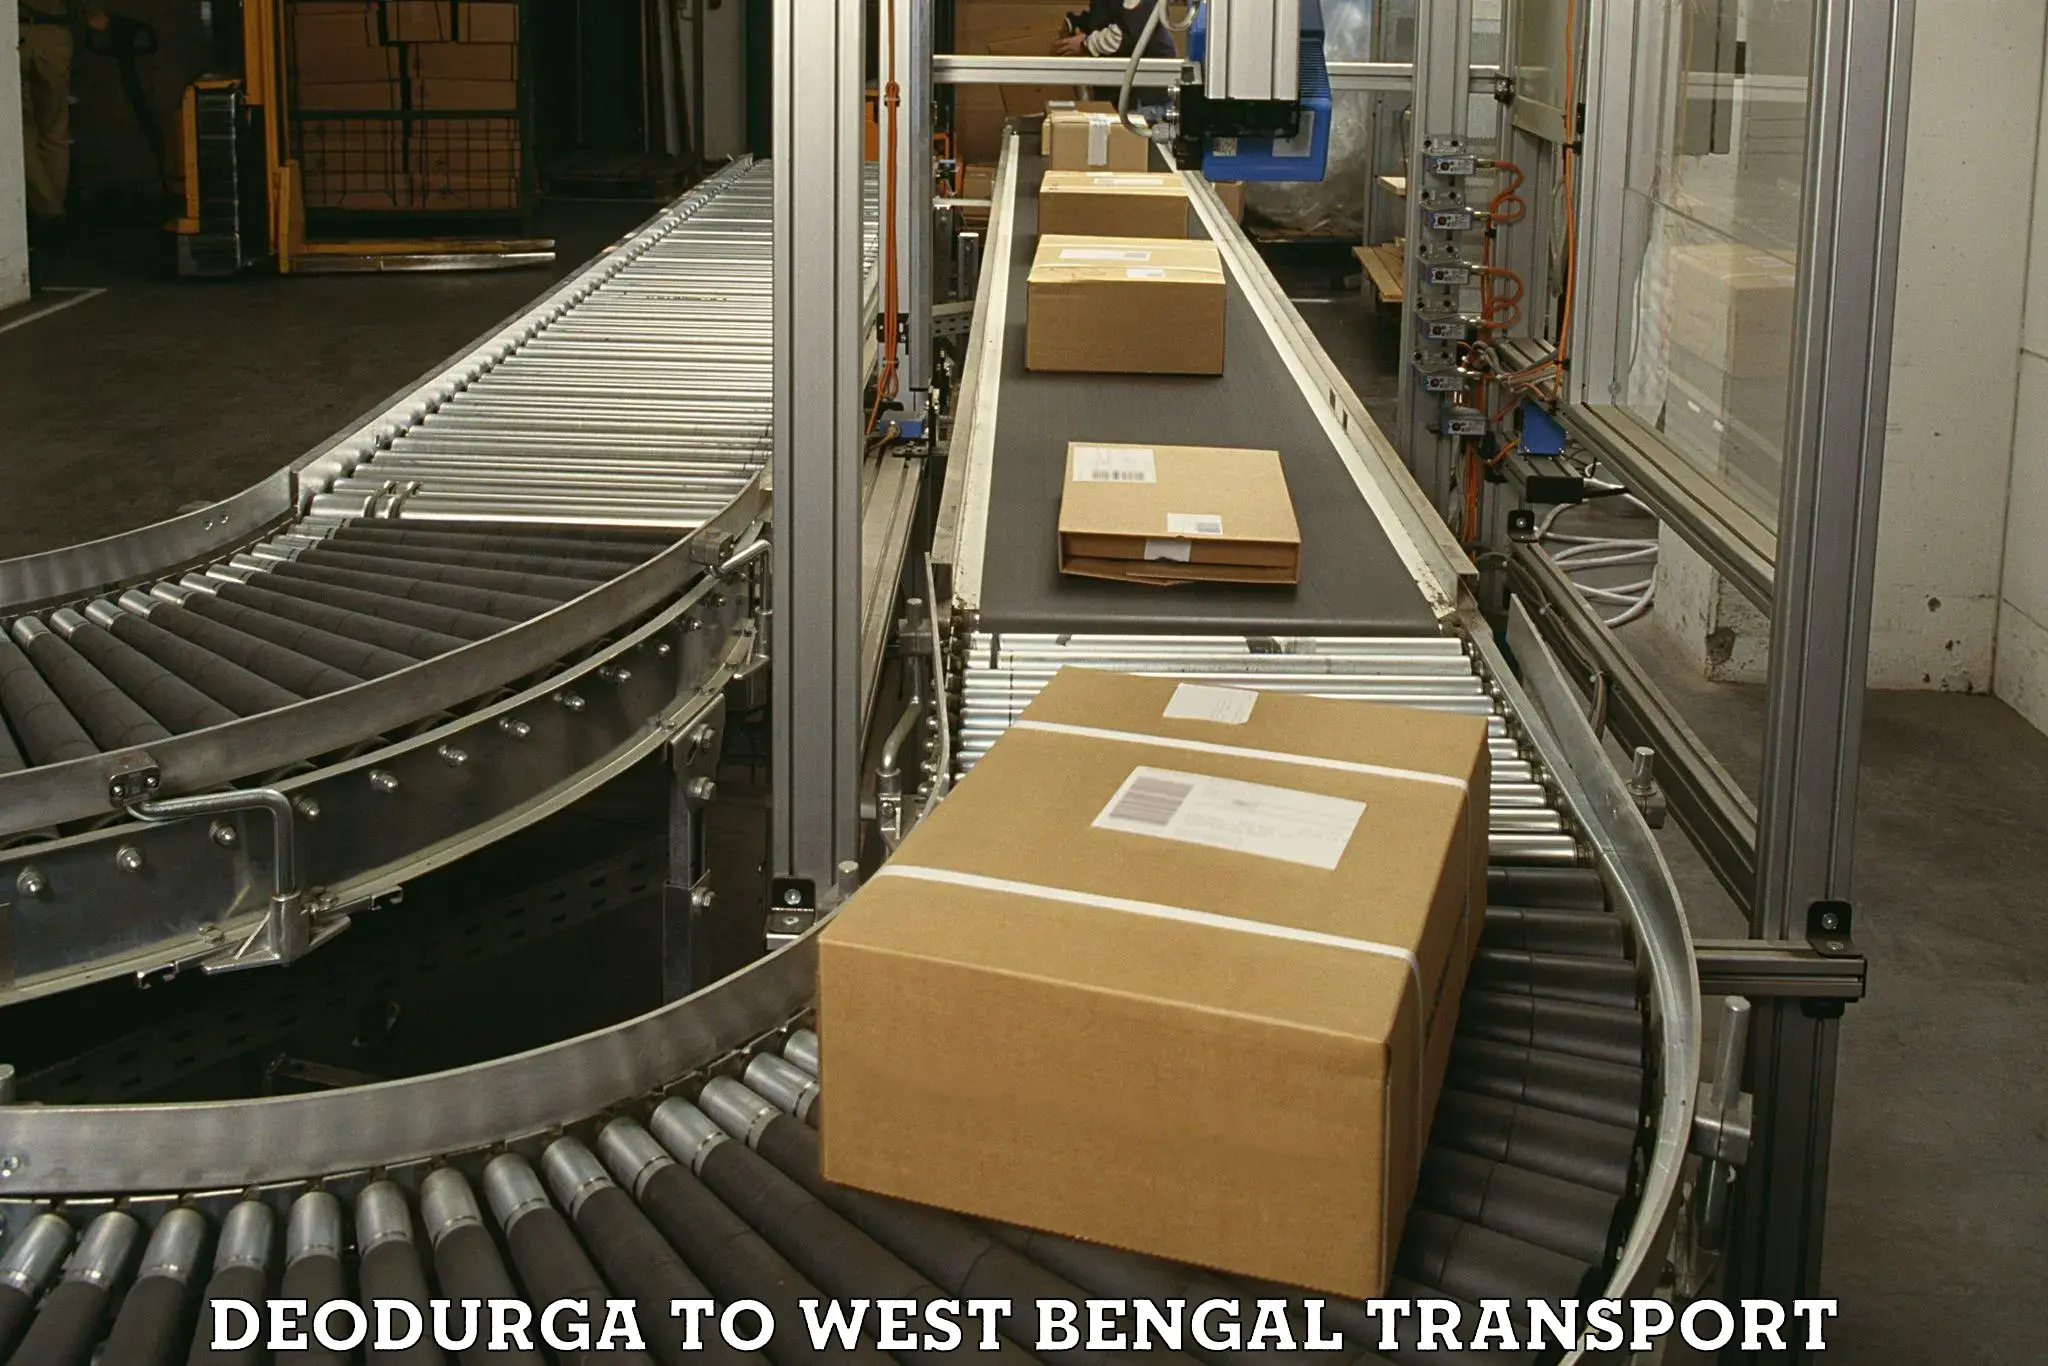 Express transport services Deodurga to Balagarh